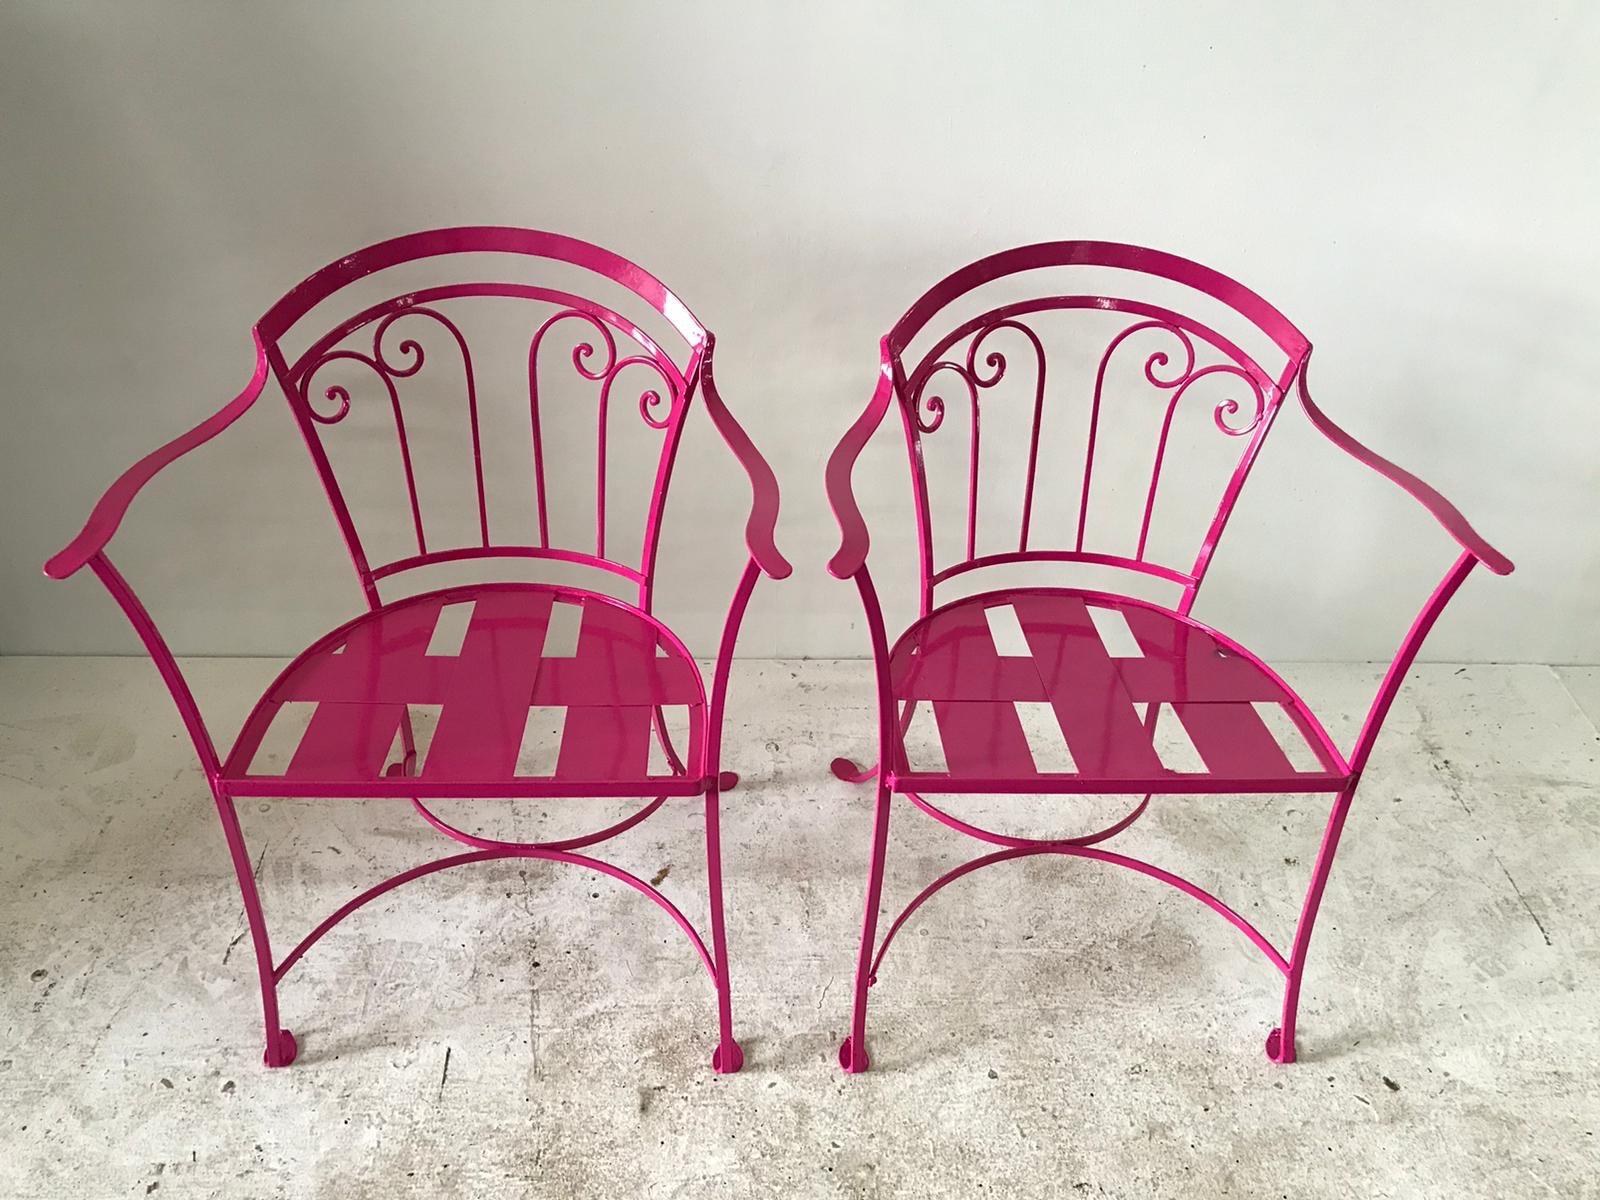 Elegantes Paar Salterini schmiedeeiserne Gartenstühle für den Außenbereich, pulverbeschichtet in der Farbe passion pink, ca. 1950er Jahre.
 
  